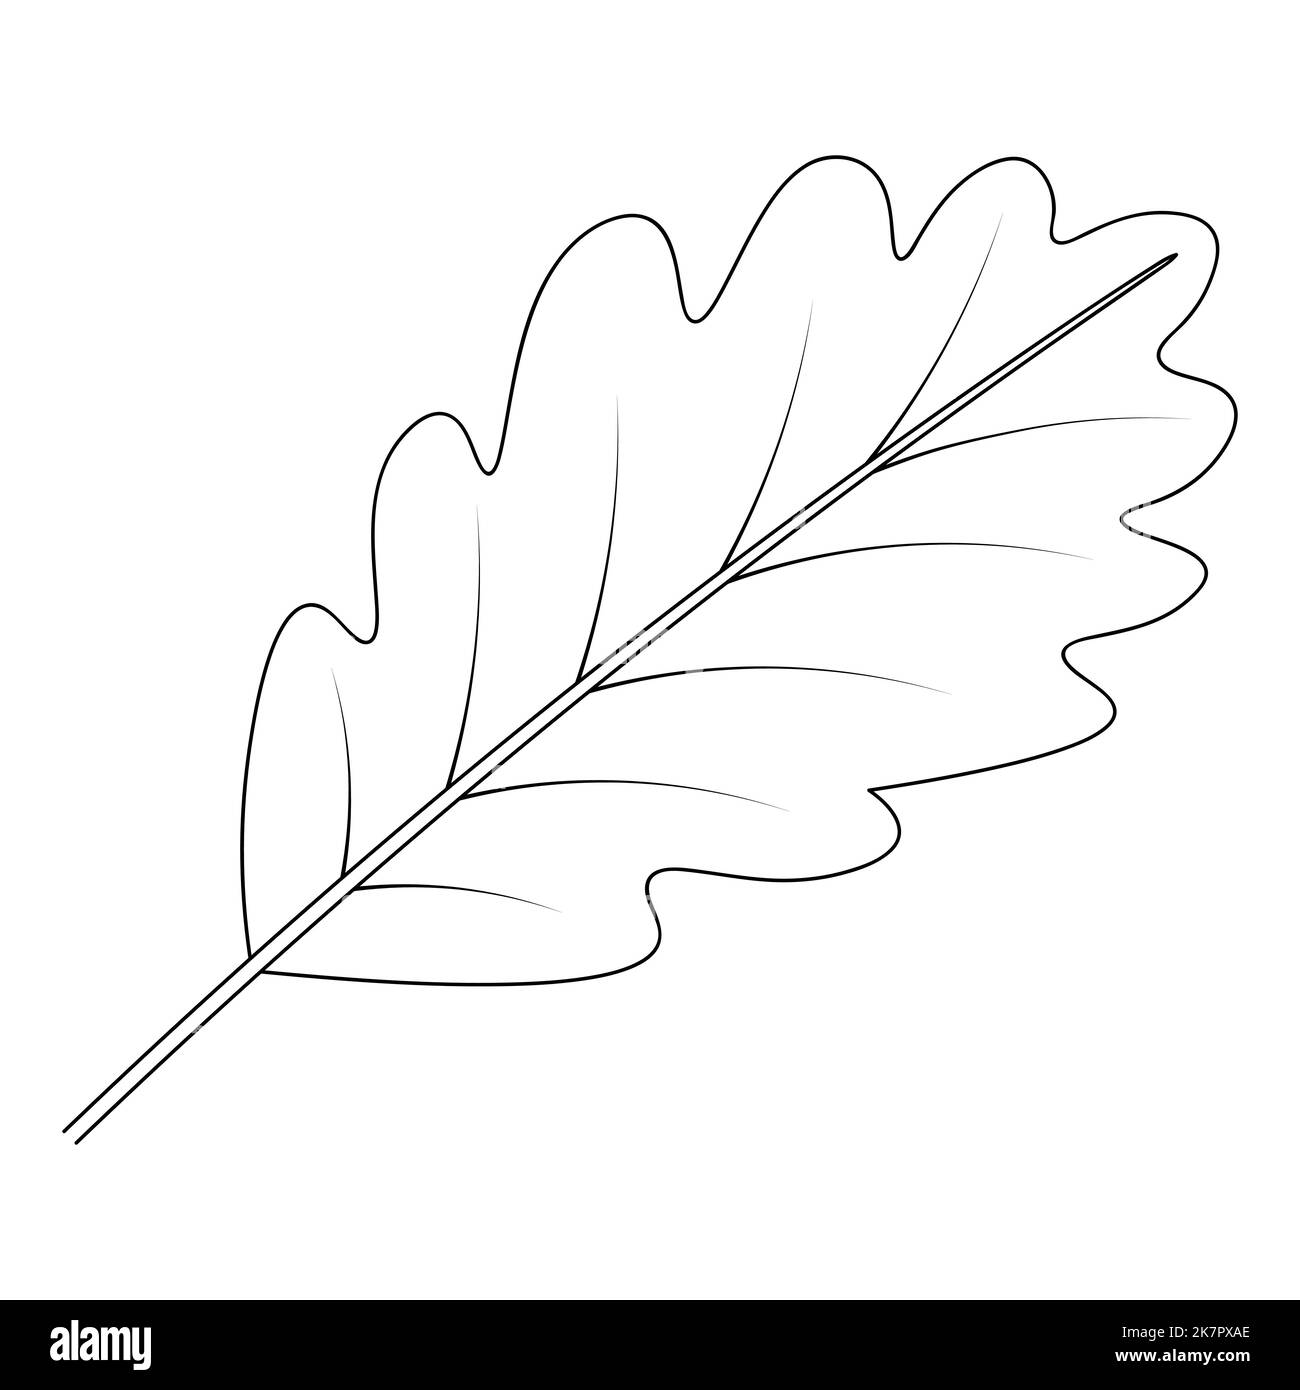 Eichenblatt. Teil des Baumes mit Adern. Vektorgrafik. Umriss auf einem isolierten weißen Hintergrund. Doodle-Stil. Skizze. Malbuch Stock Vektor